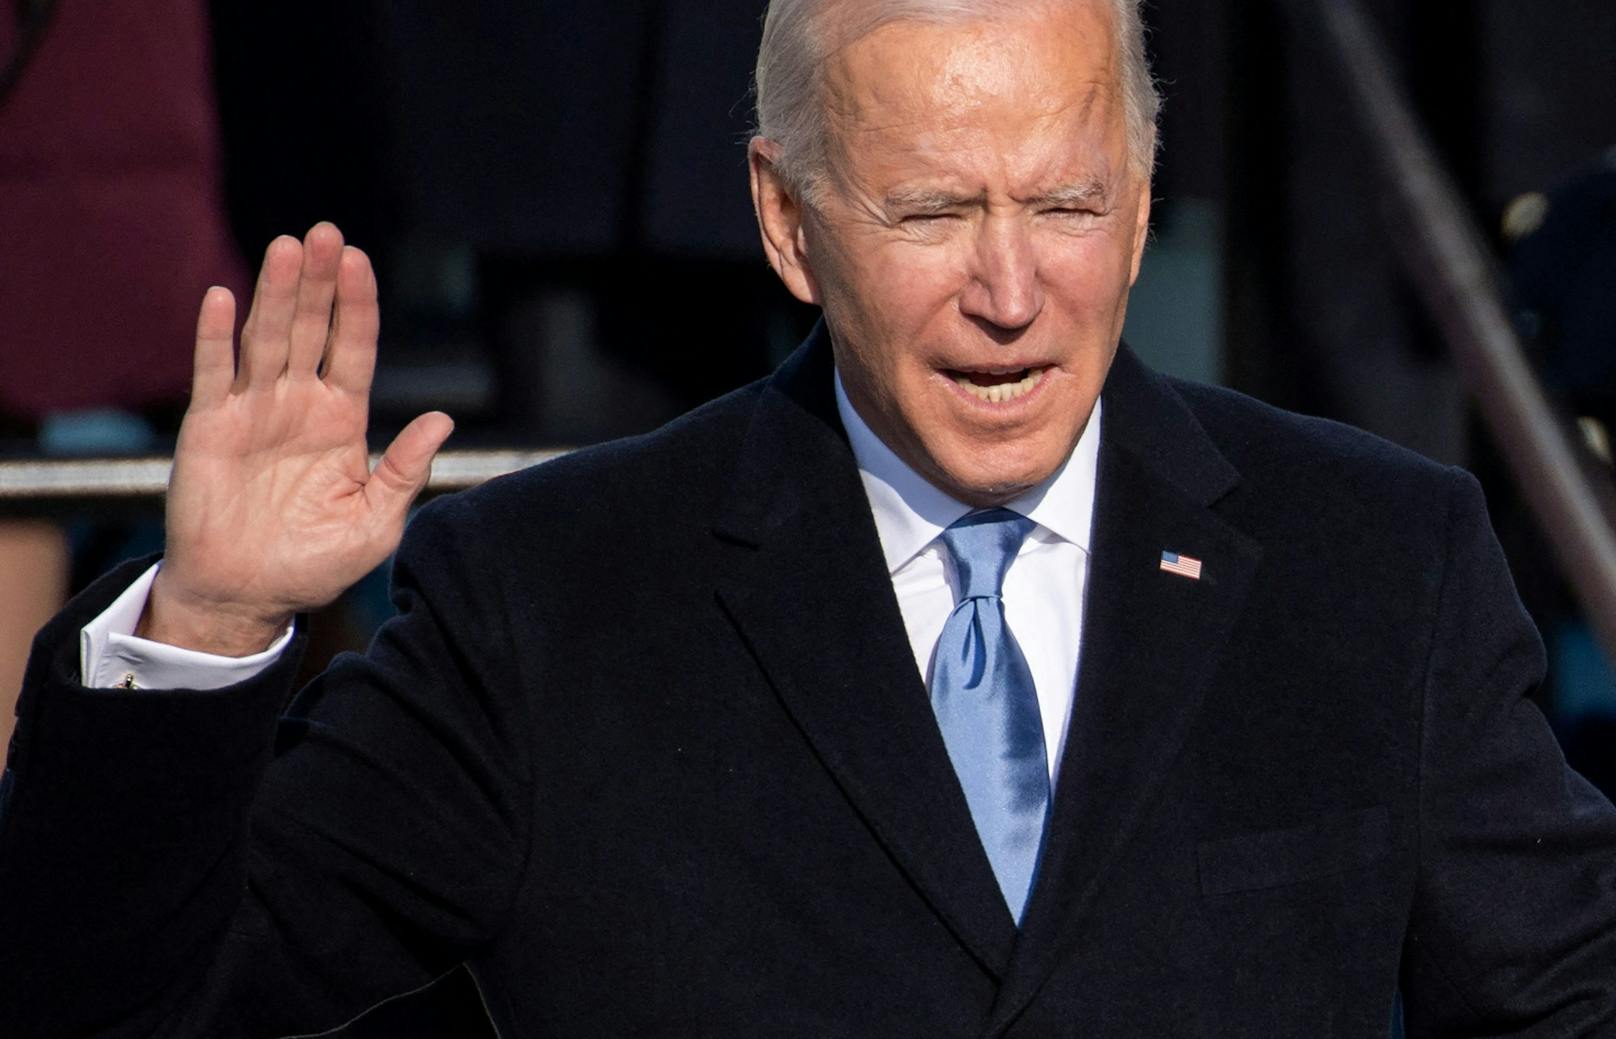 Der 80-jährige Joe Biden deutete in einem Interview an, 2024 erneut für das höchste Amt der USA kandidieren zu wollen. 